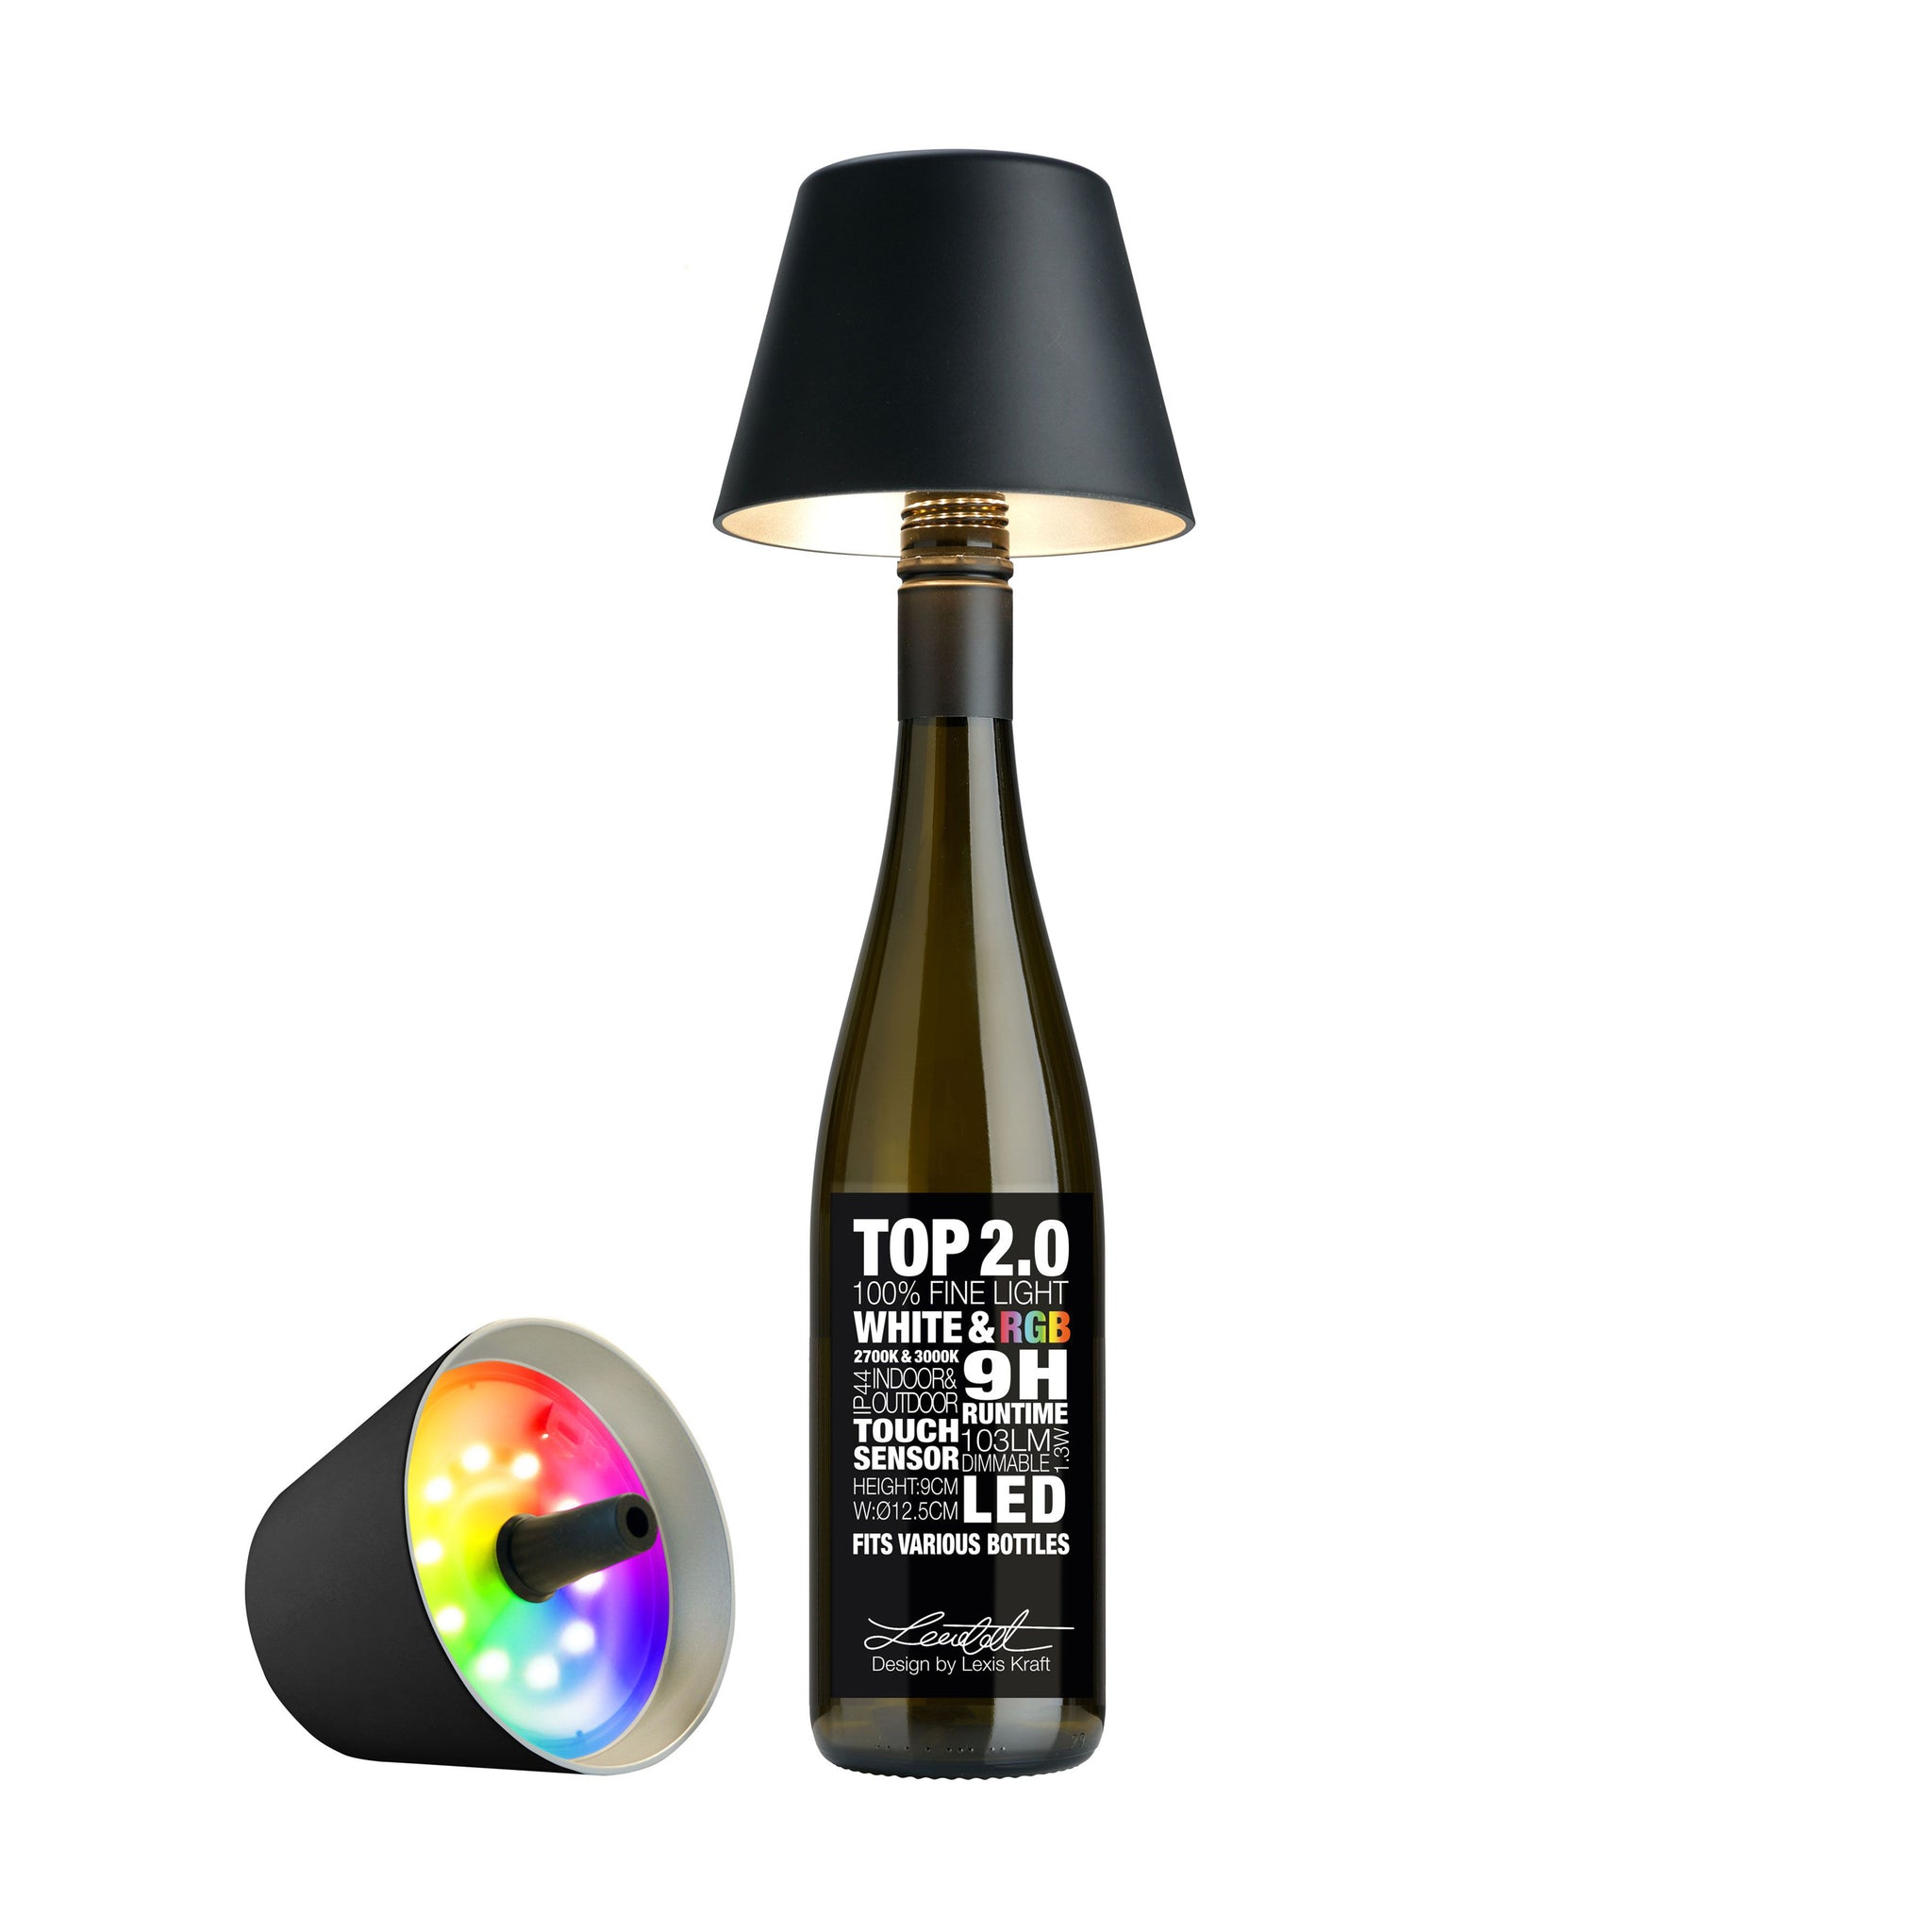 Sompex Top 2.0 Oplaadbare Flessenlamp│Zwart│Buitenverlichting│art. 72520│lamp en fles en naast fles met kleurenverlichting aan